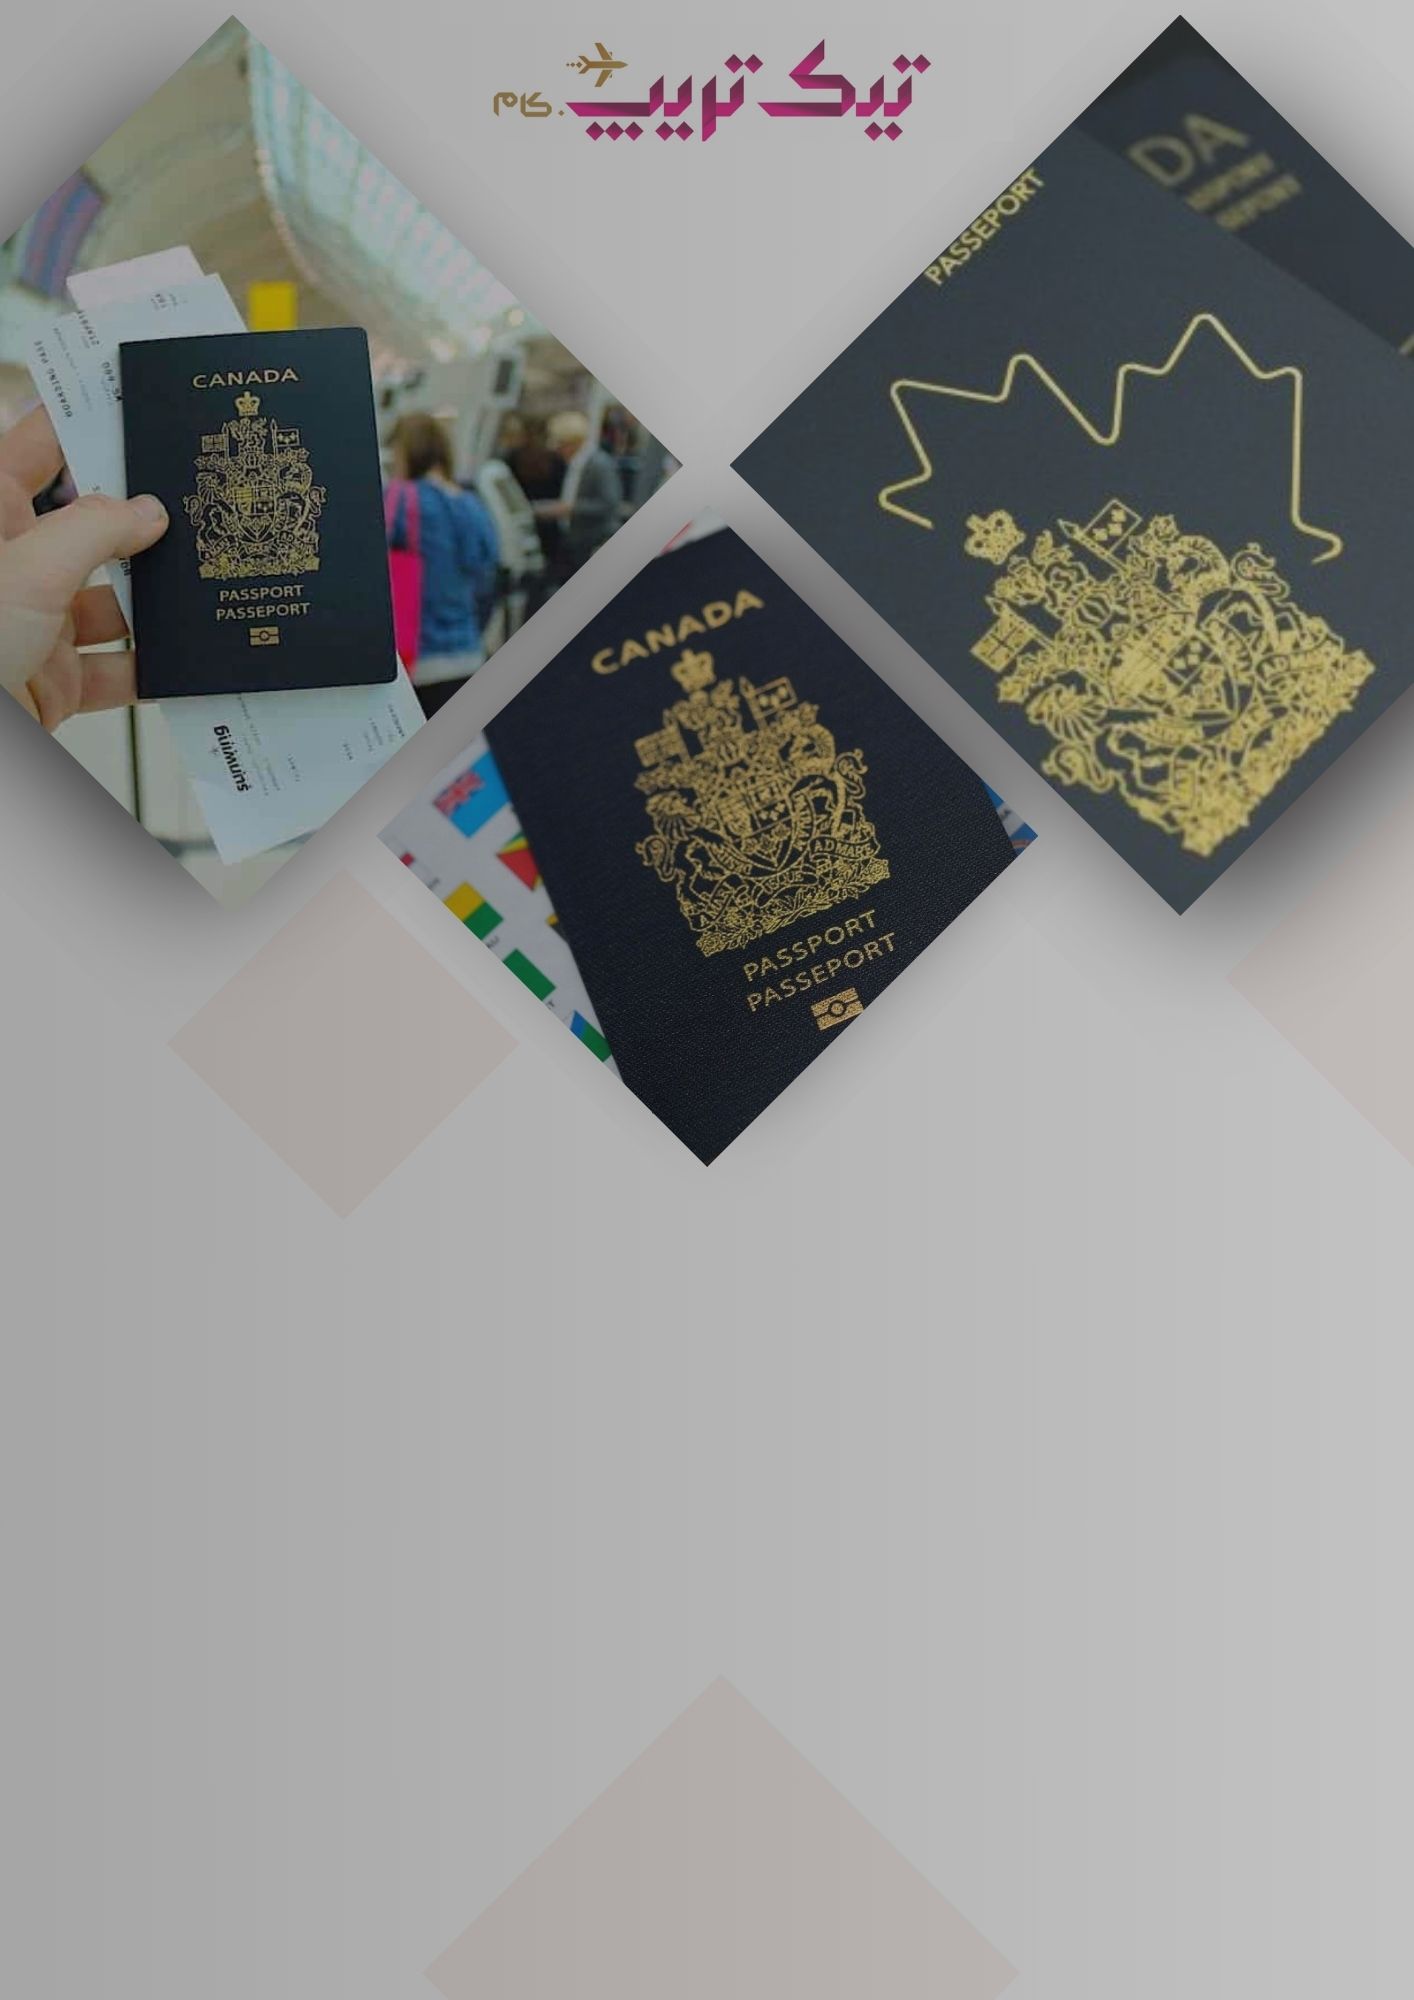 کانادا، دنیای تازه مهاجرت